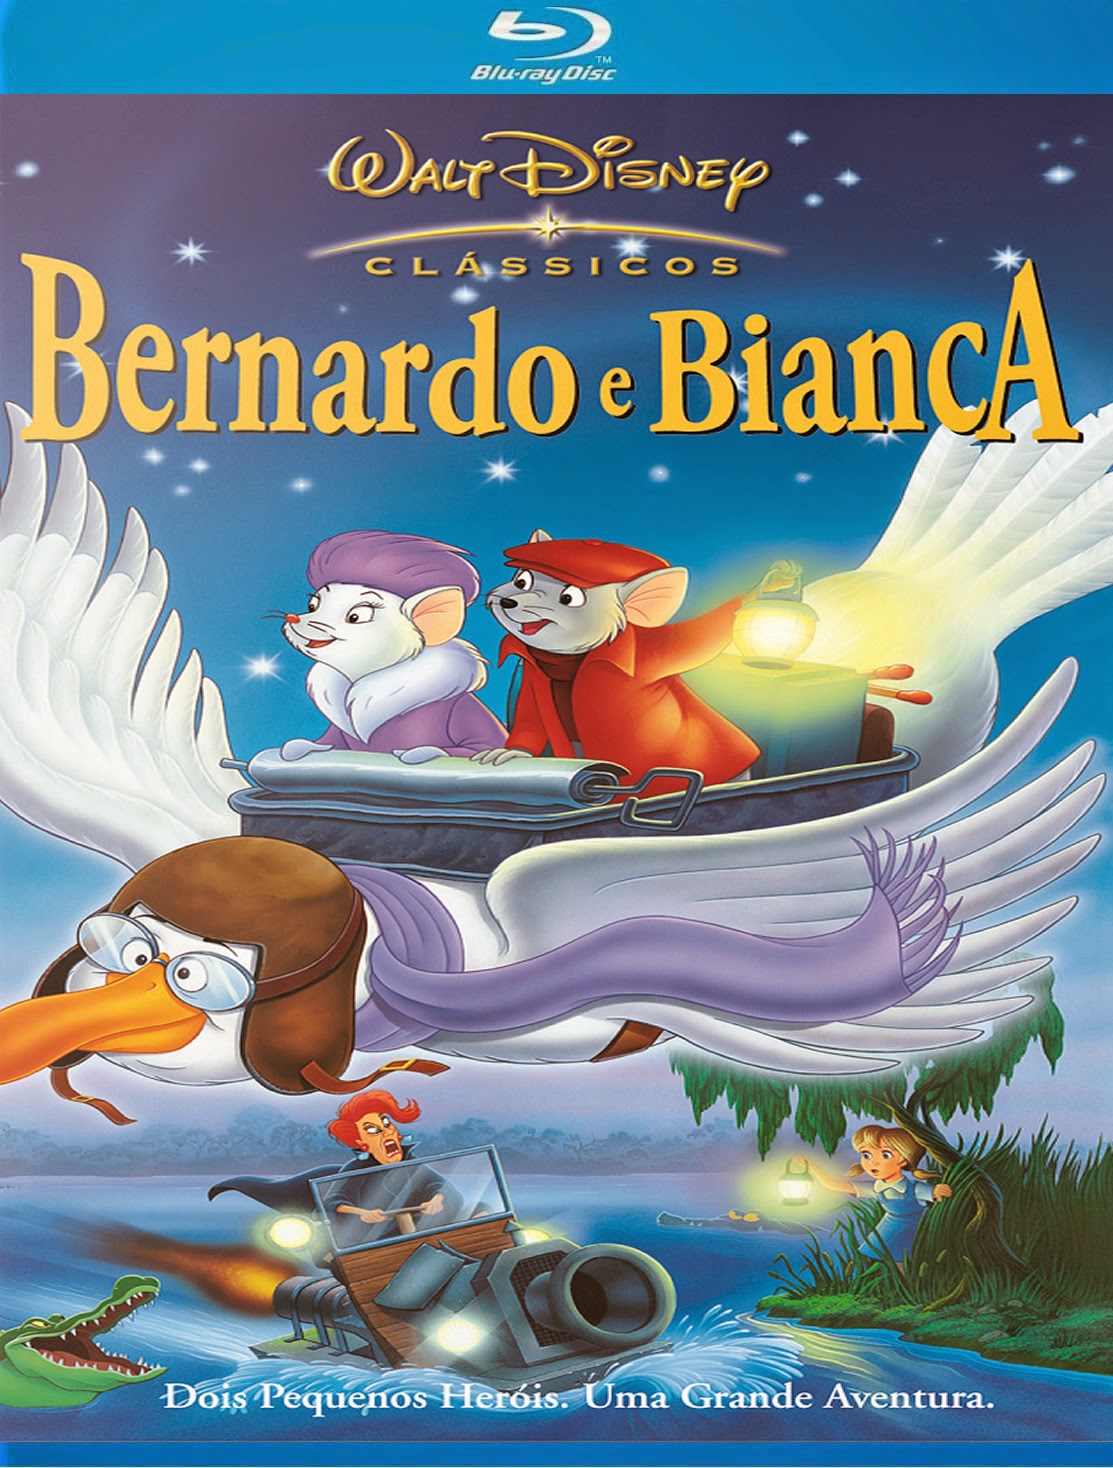 Bernardo e Bianca [ 1977 ] 720P Assistir e Baixar Download